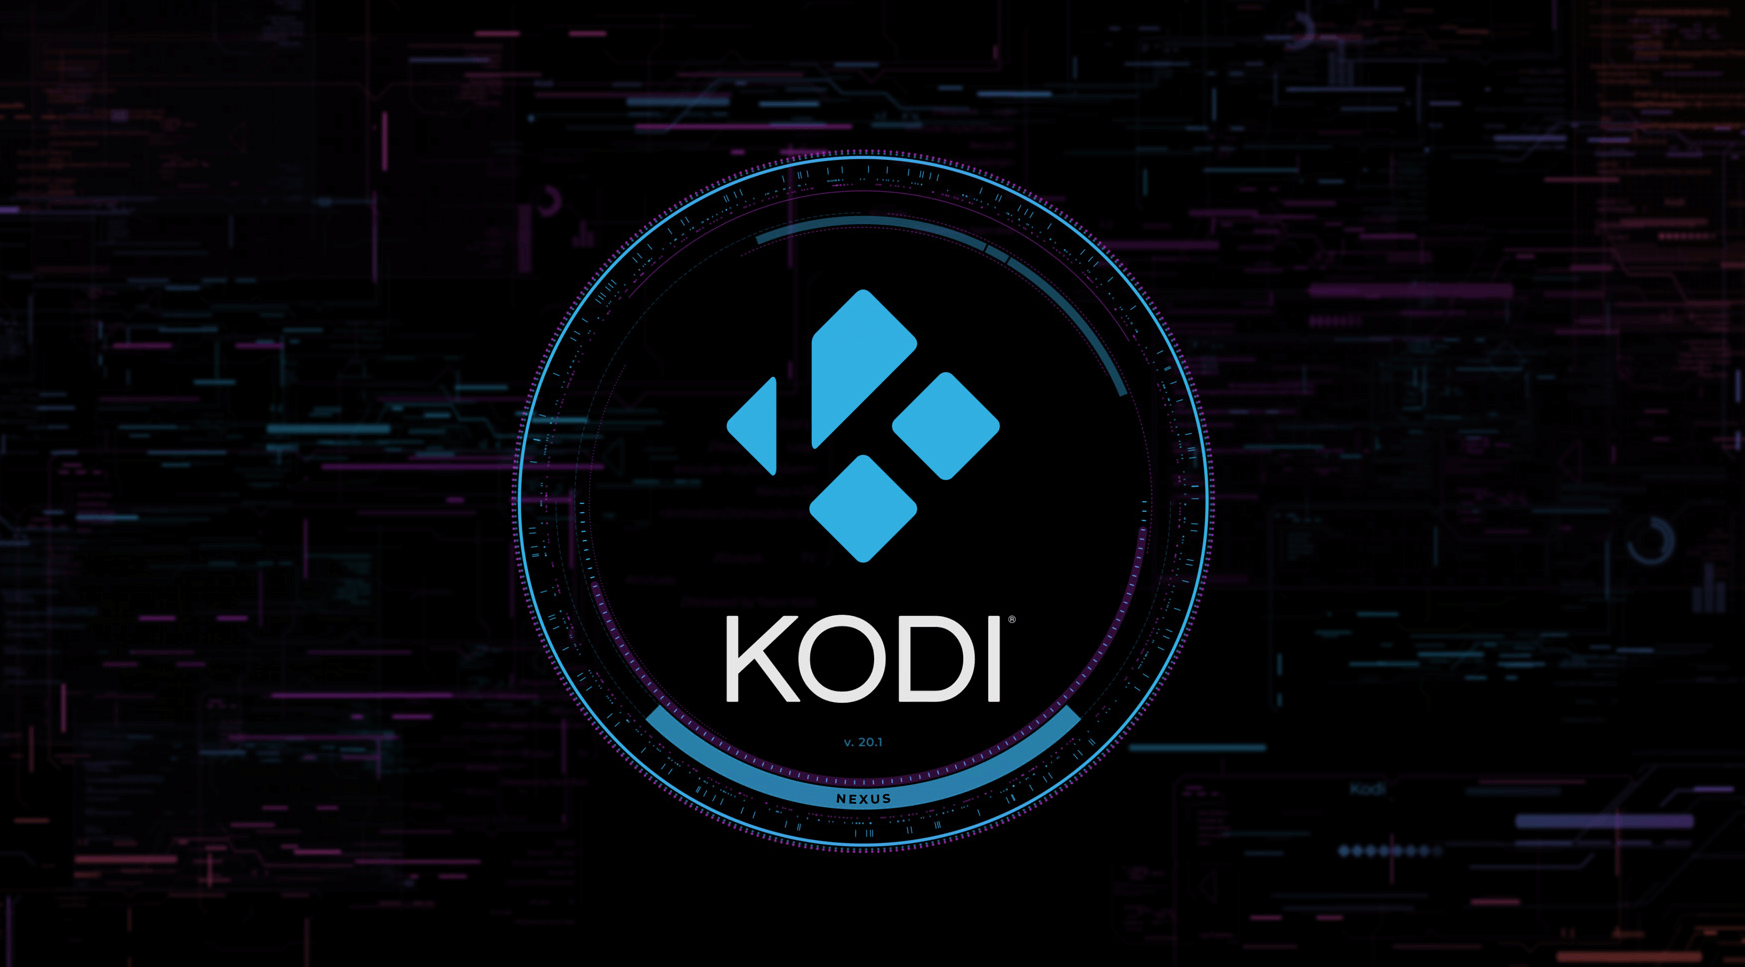 Launch Kodi